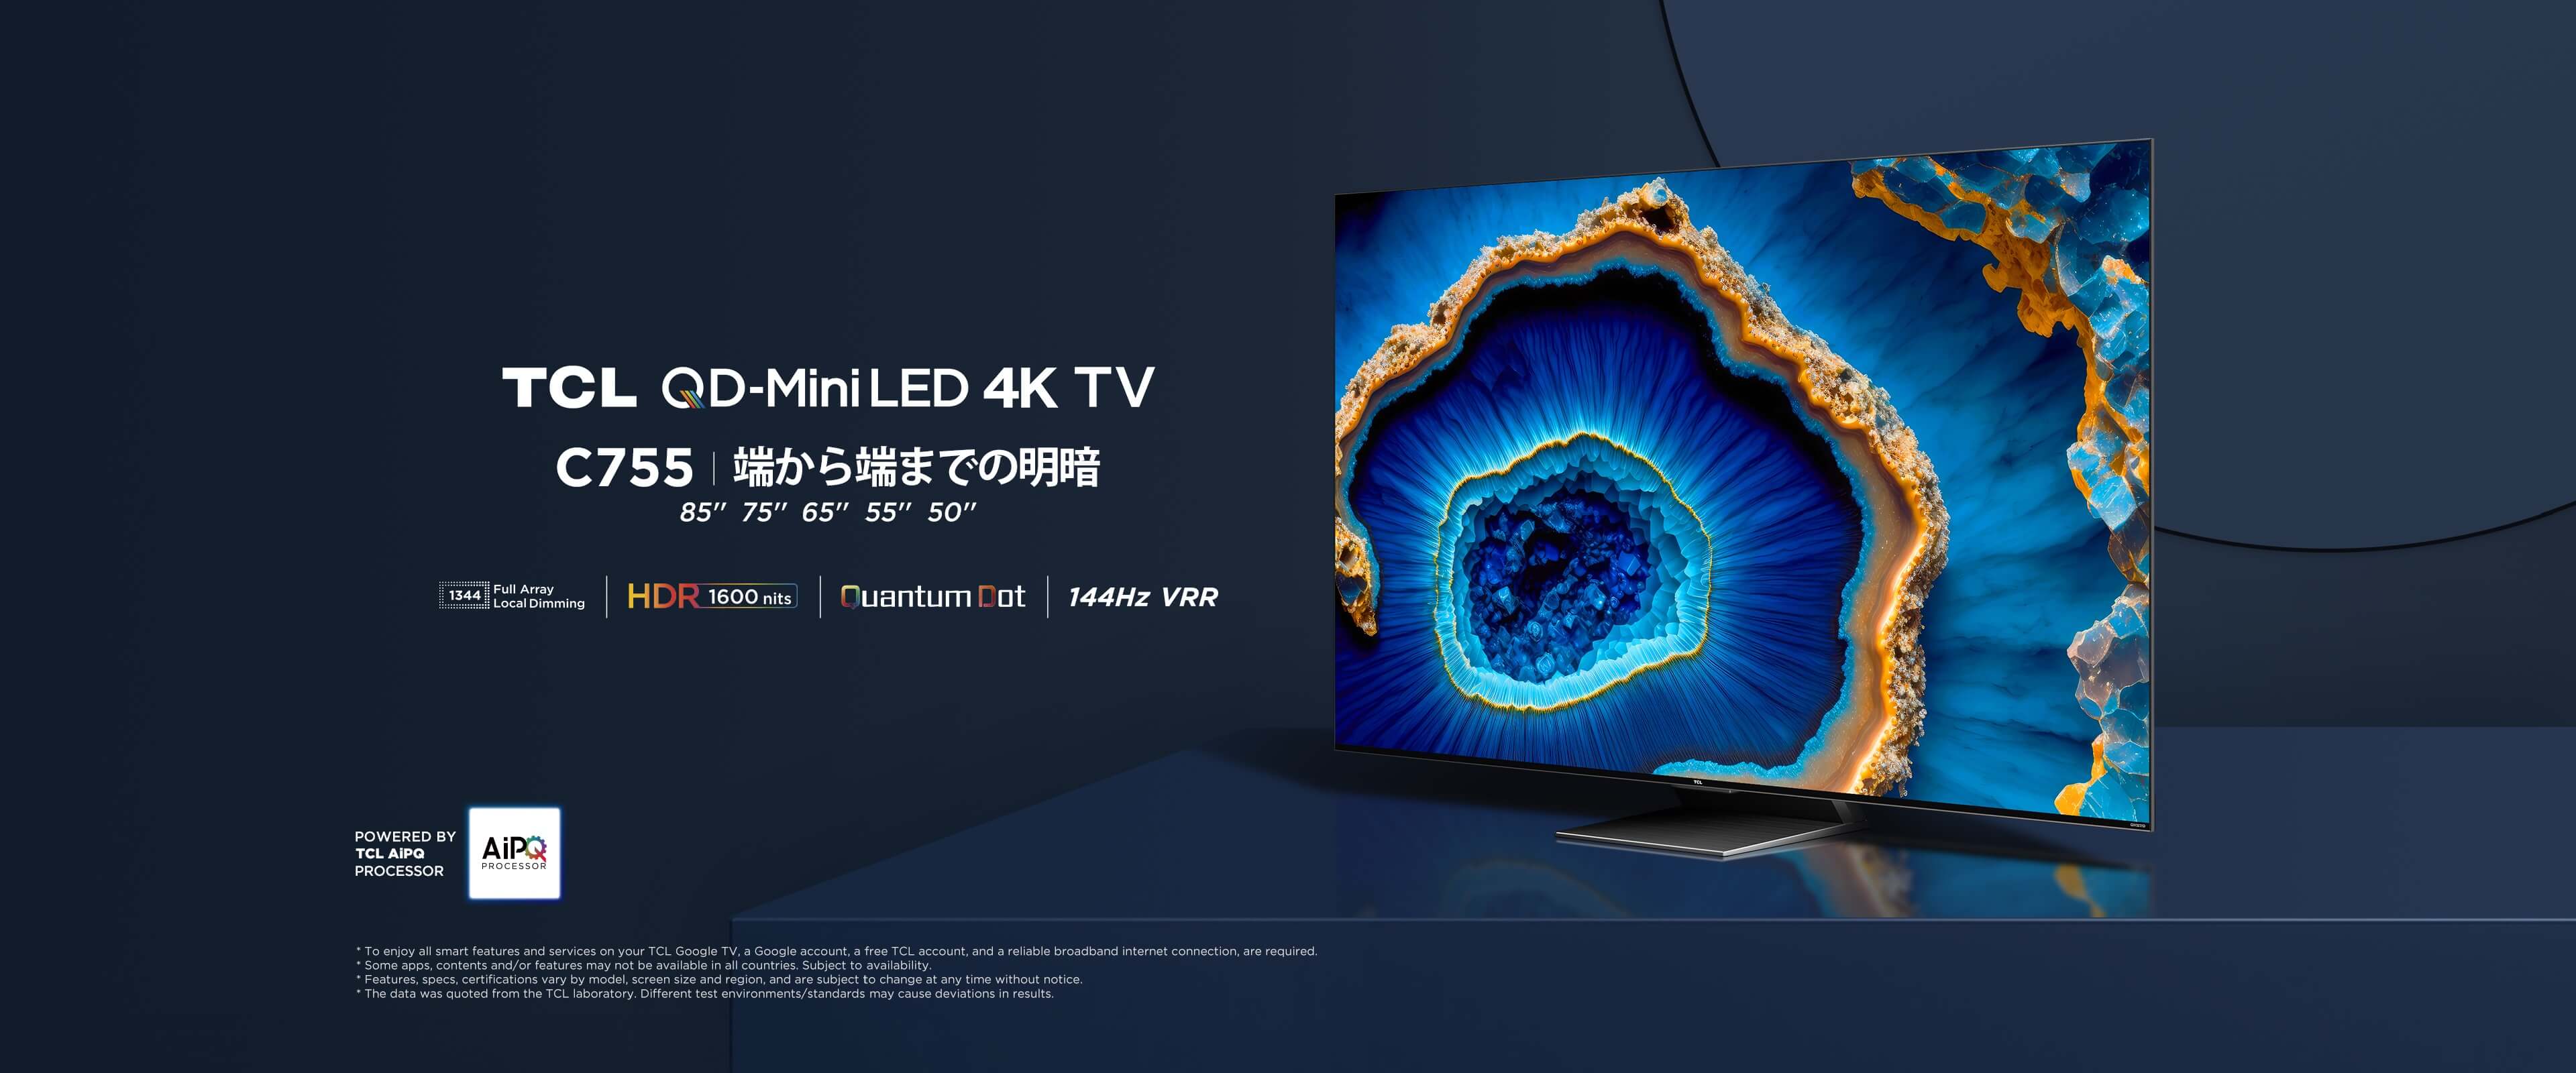 南宫ng·28 C755 量子ドットMini LED 4K TV